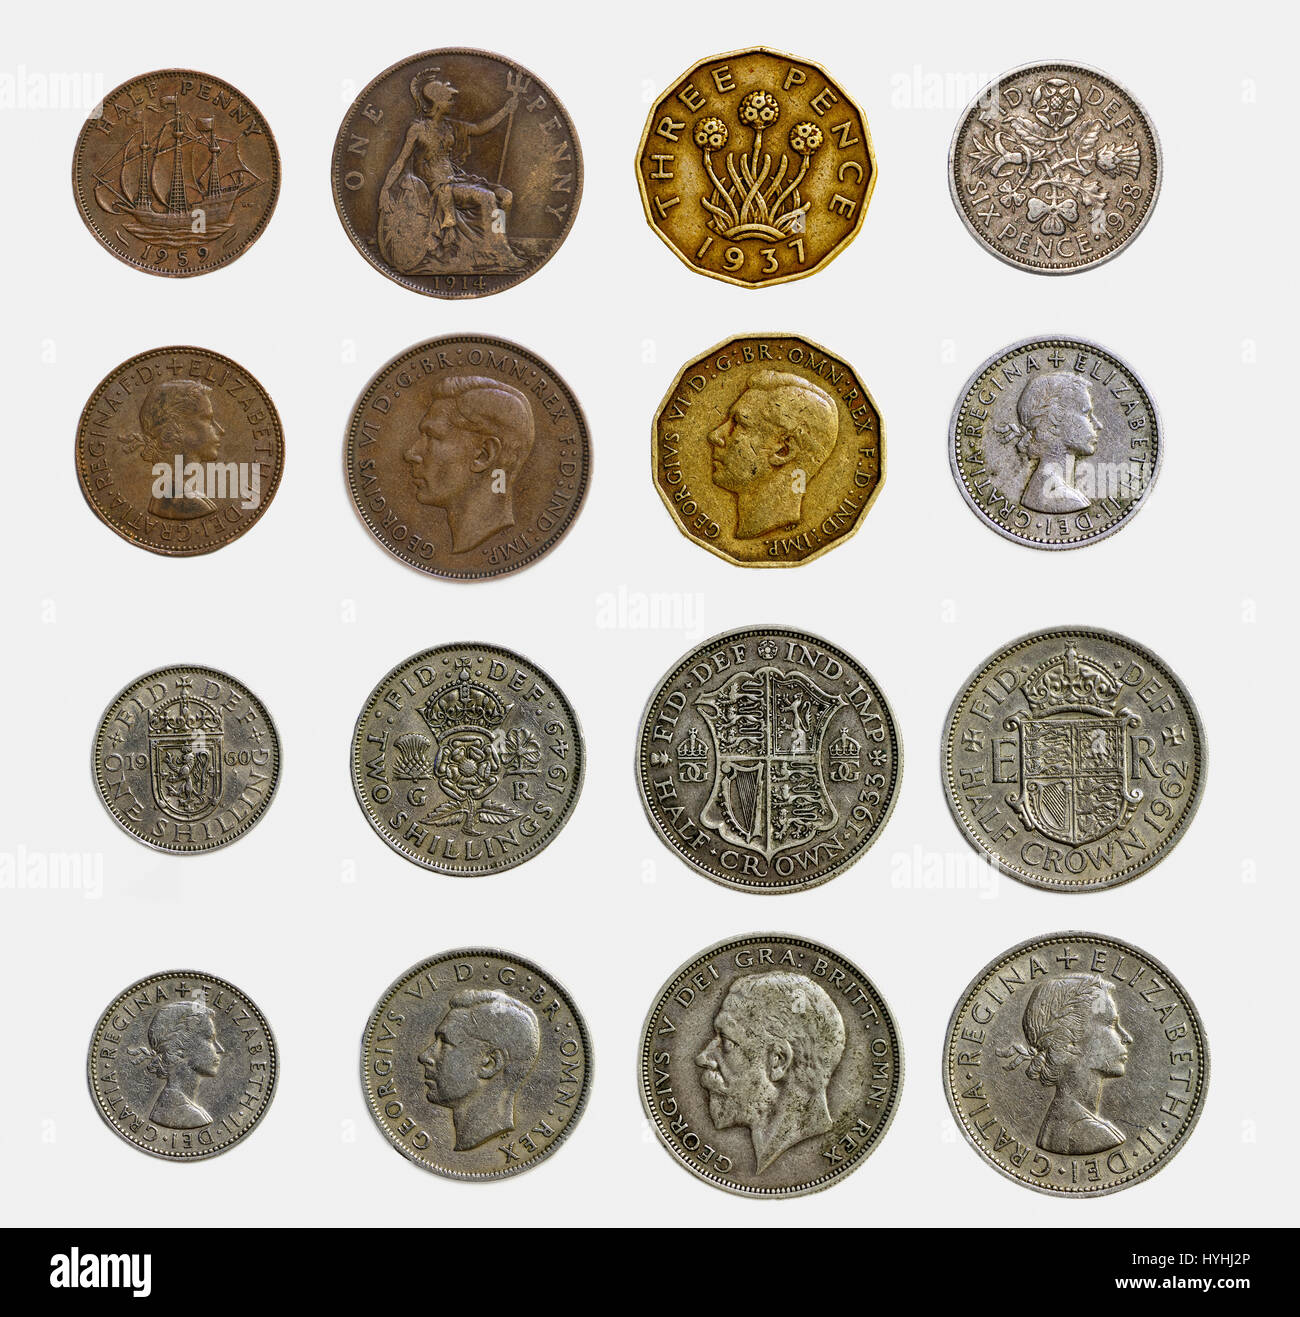 Alte englische münzen -Fotos und -Bildmaterial in hoher Auflösung – Alamy